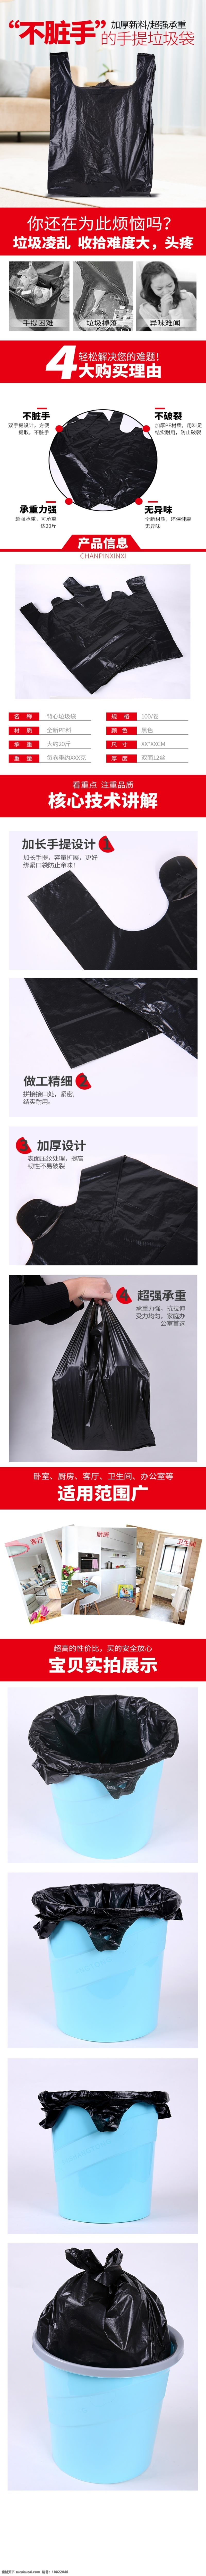 黑色 垃圾袋 详情 页 垃圾袋详情页 塑料袋 家用 超市塑料袋 简约 家居简约时尚 淘宝天猫素材 淘宝界面设计 淘宝装修模板